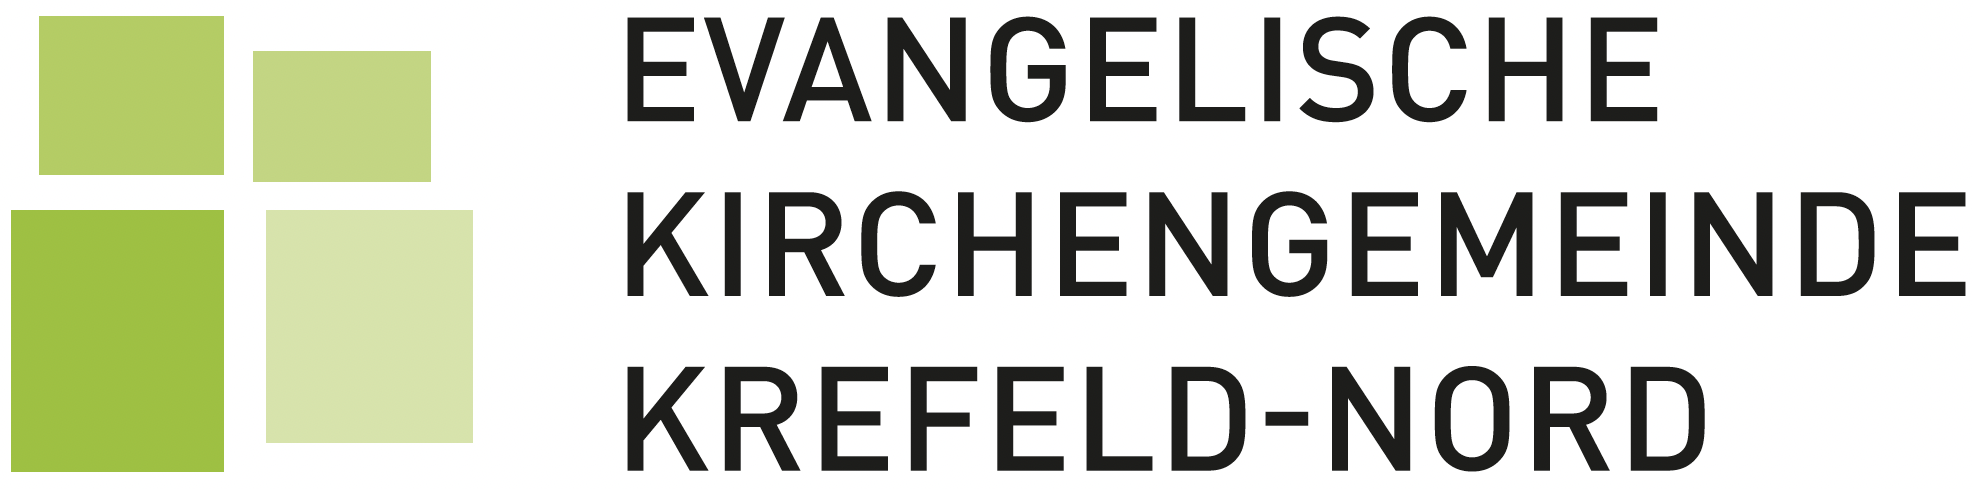 Evangelische Kirchengemeinde Krefeld-Nord